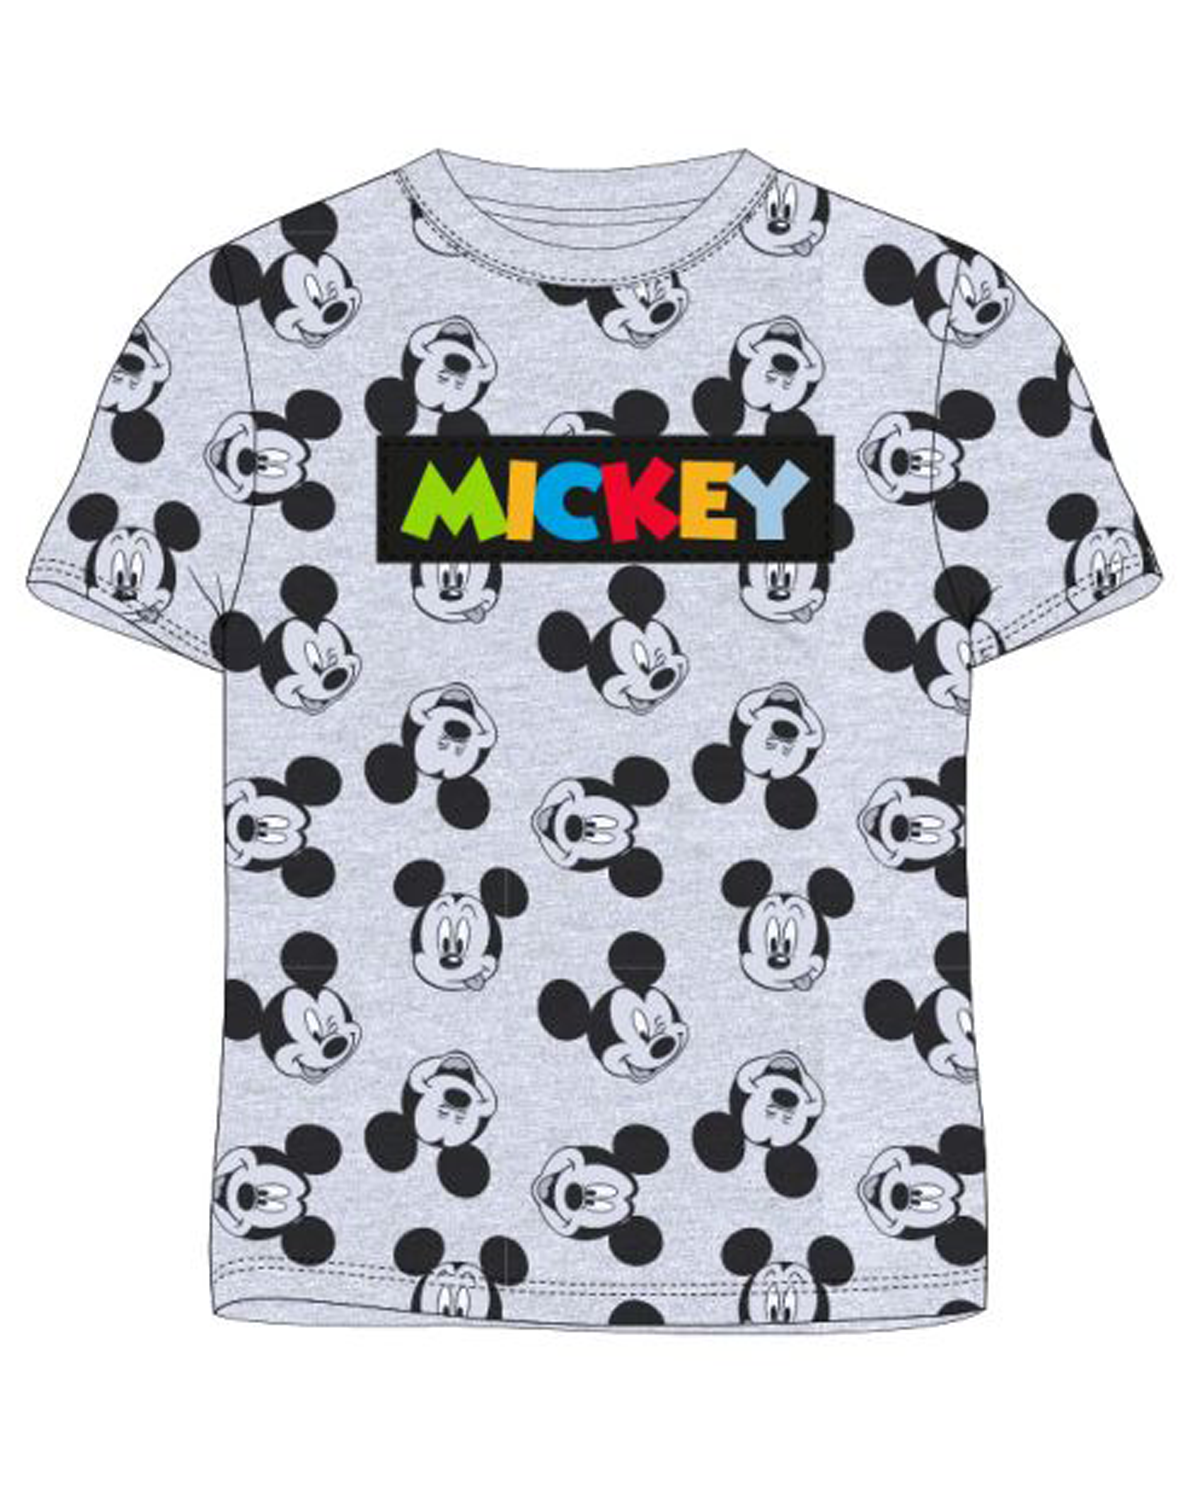 Levně Mickey Mouse - licence Chlapecké tričko - Mickey Mouse 5202A083NI, šedý melír Barva: Šedá